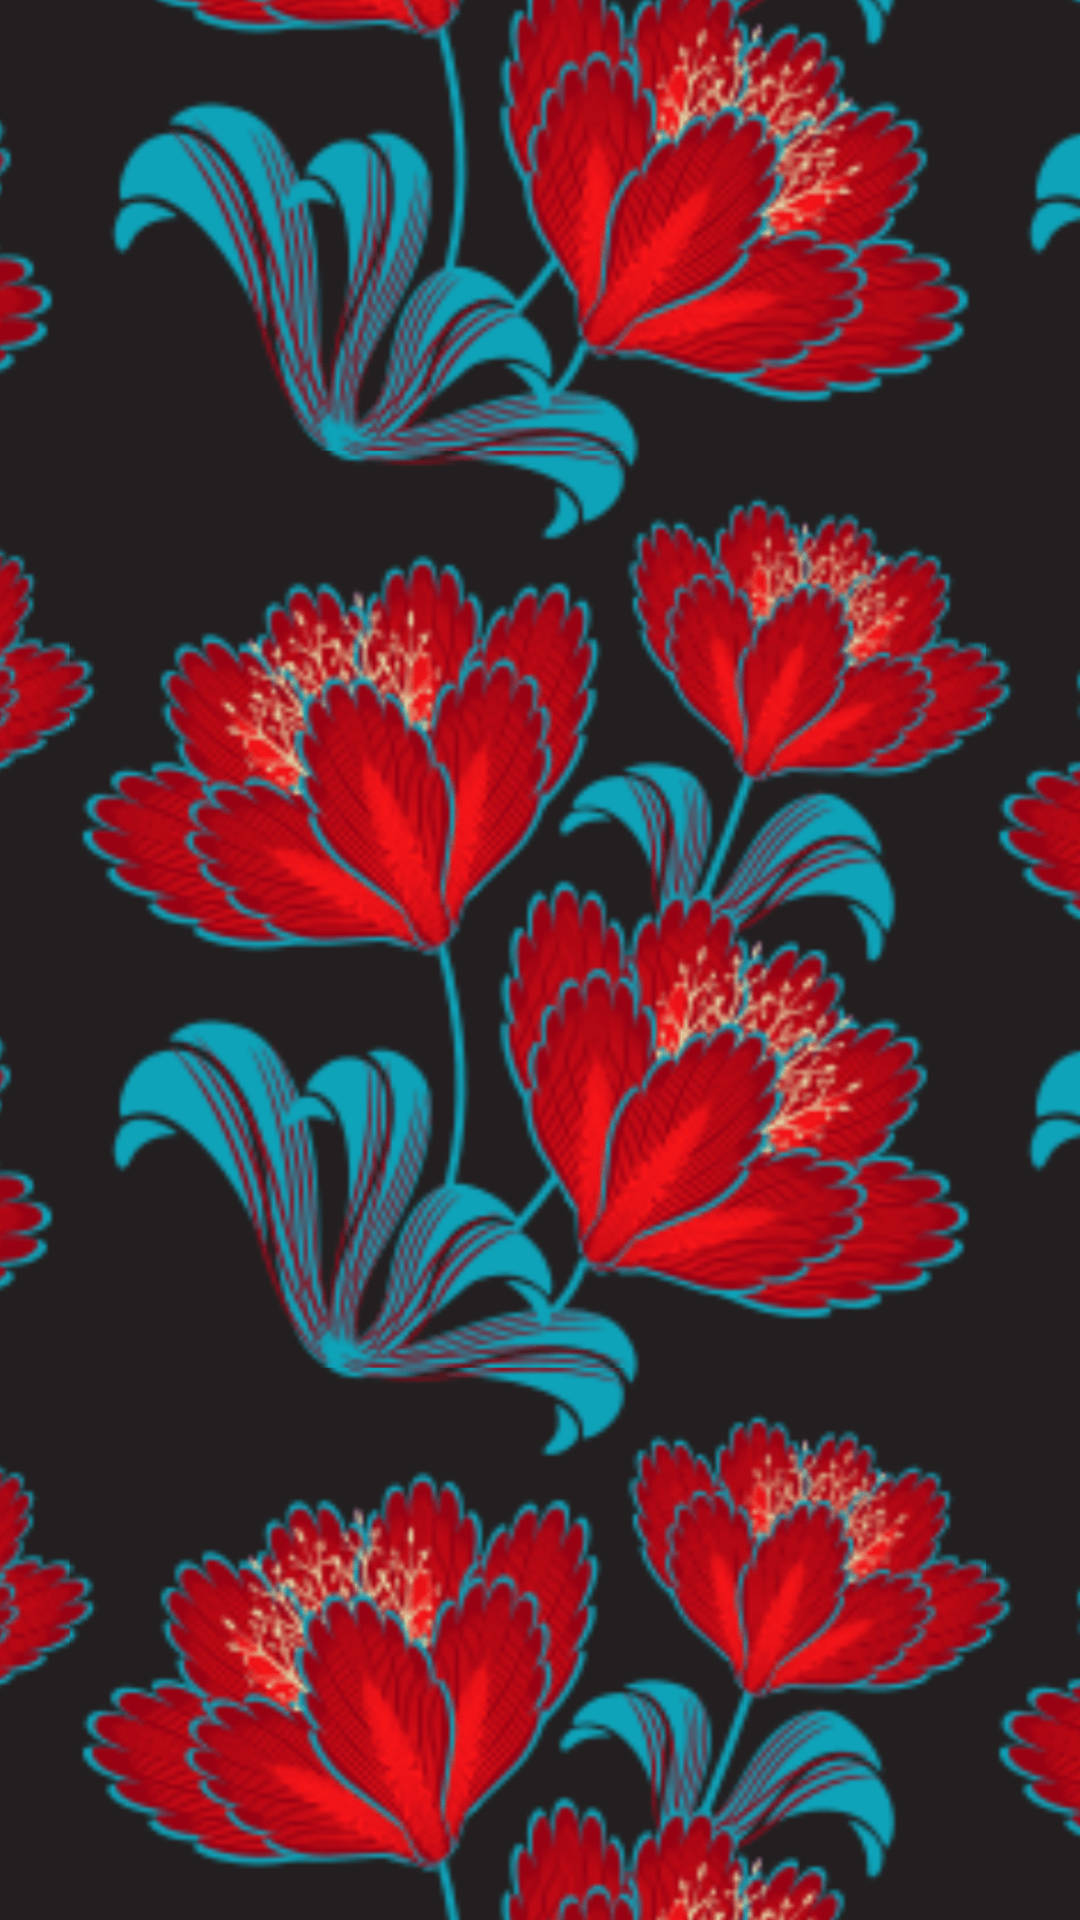 Estilofloral De Flor Roja Para Iphone. Fondo de pantalla